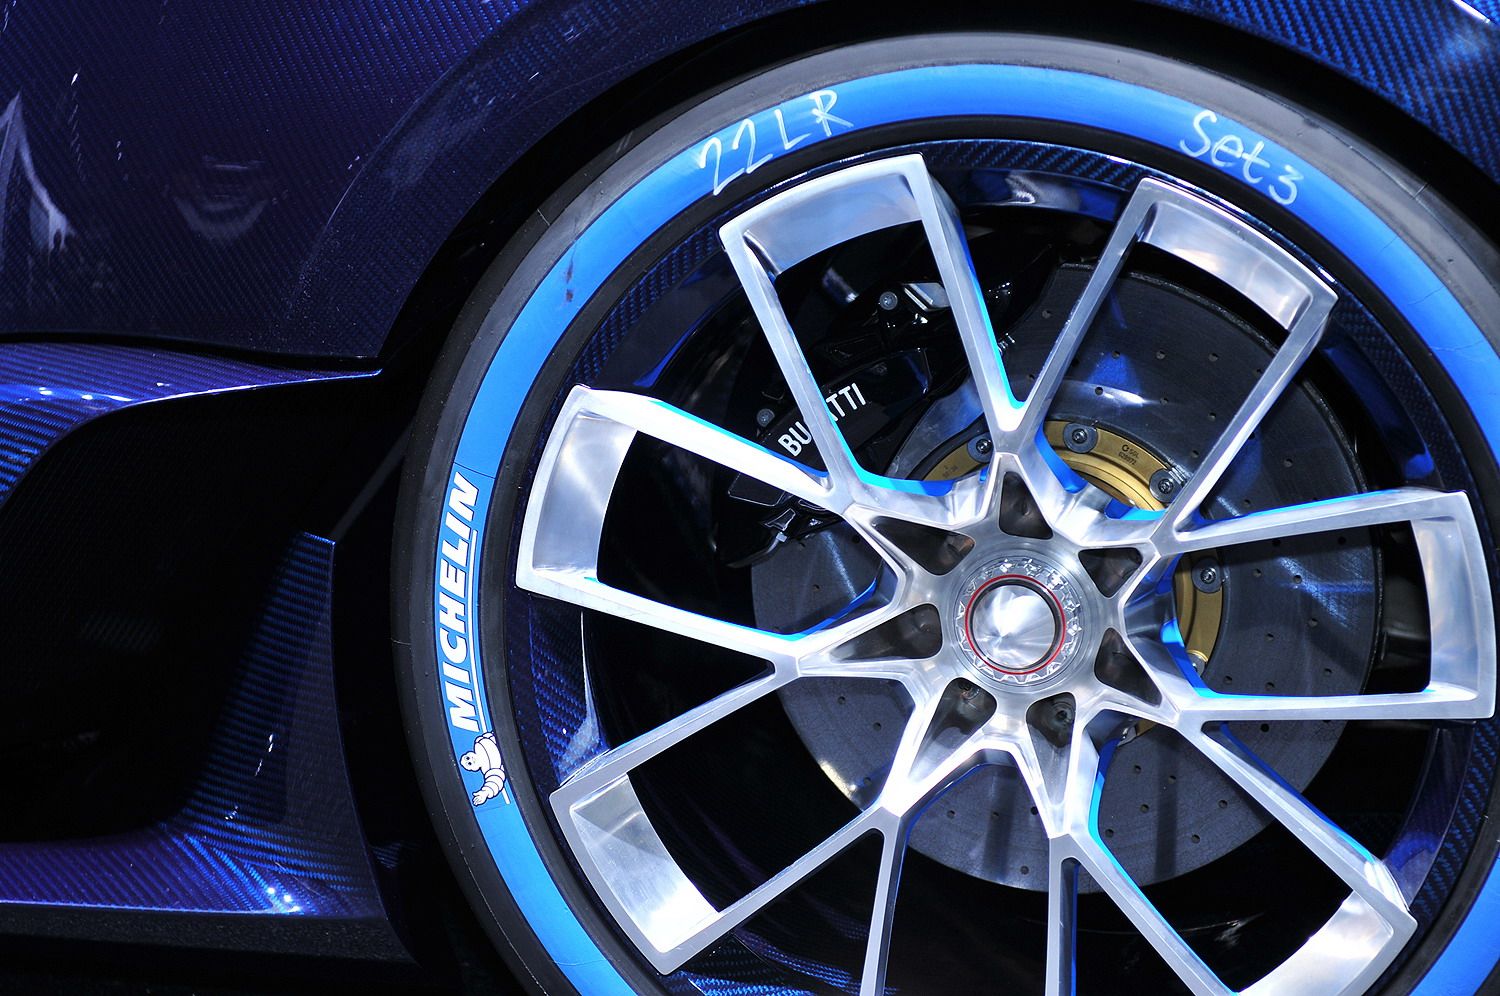 2016 Bugatti Vision Gran Turismo